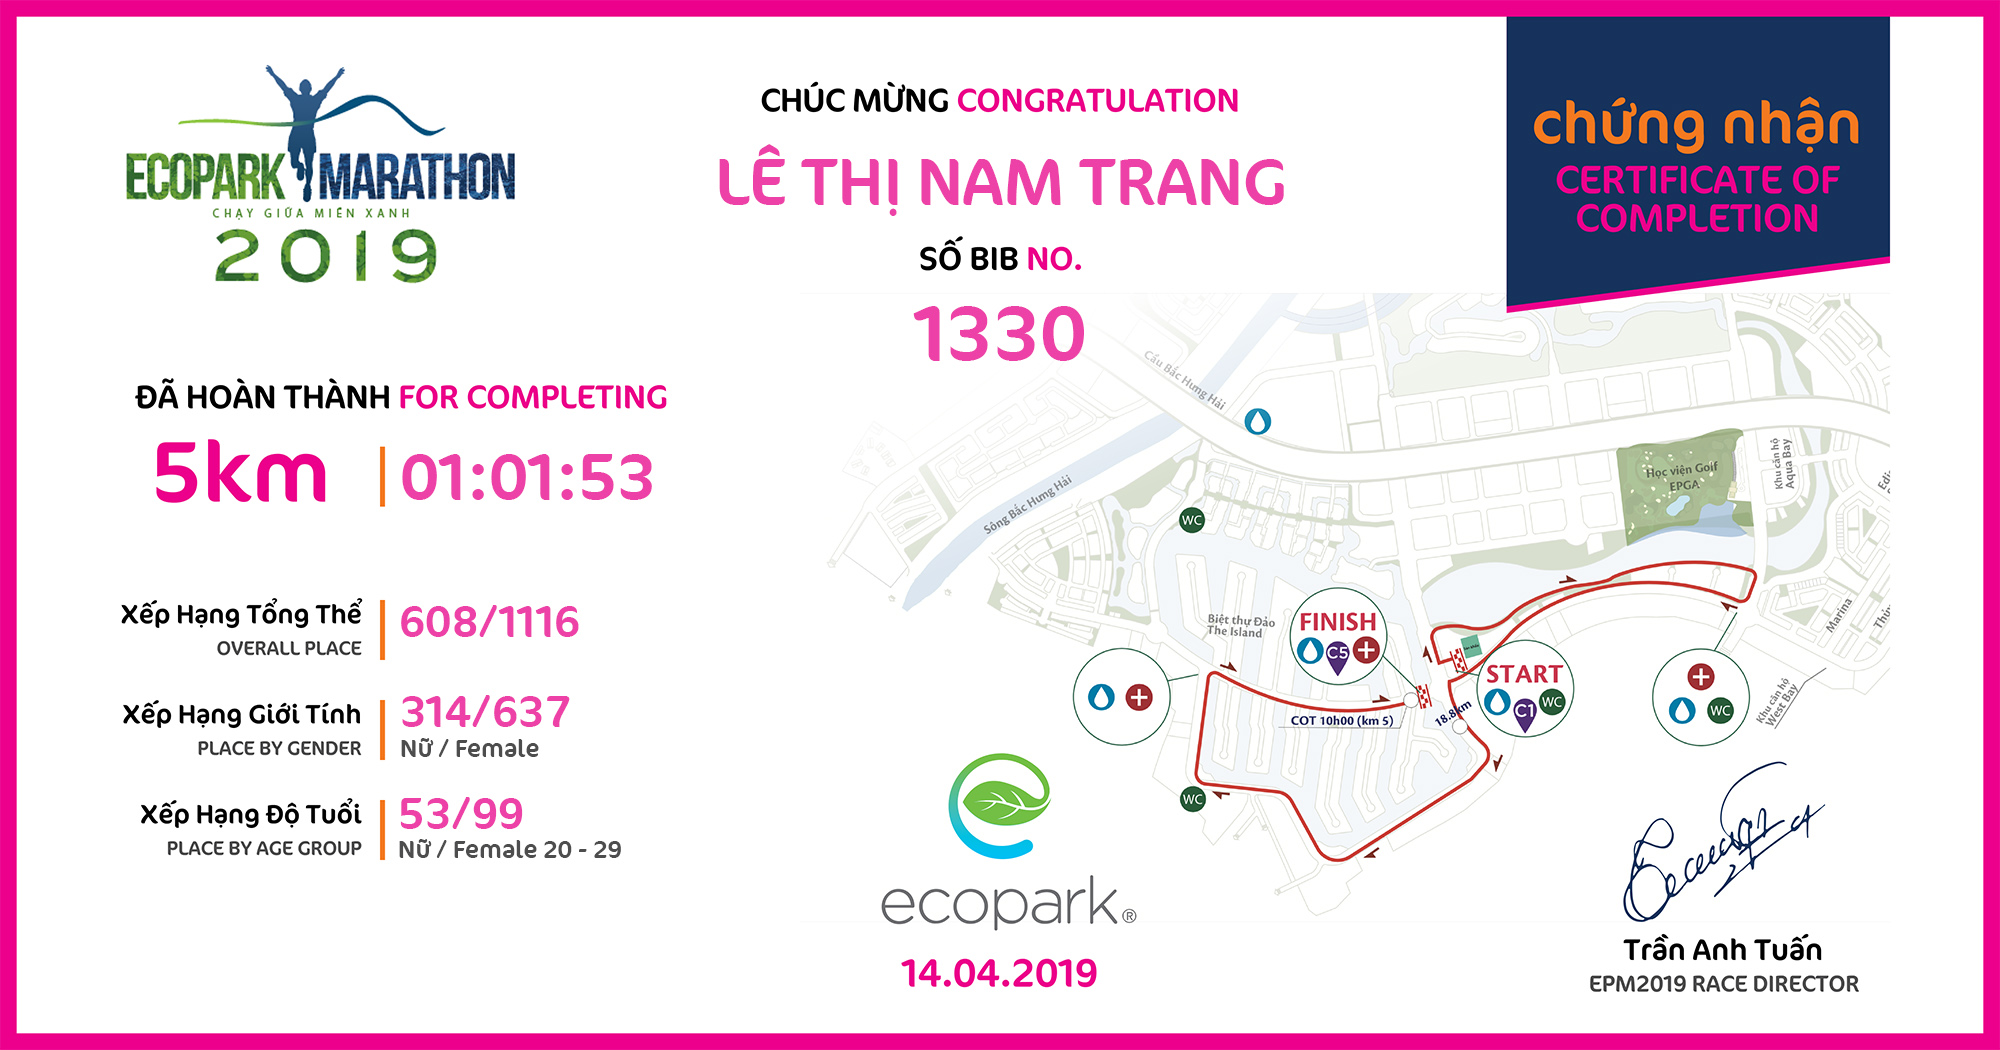 1330 - Lê Thị Nam Trang